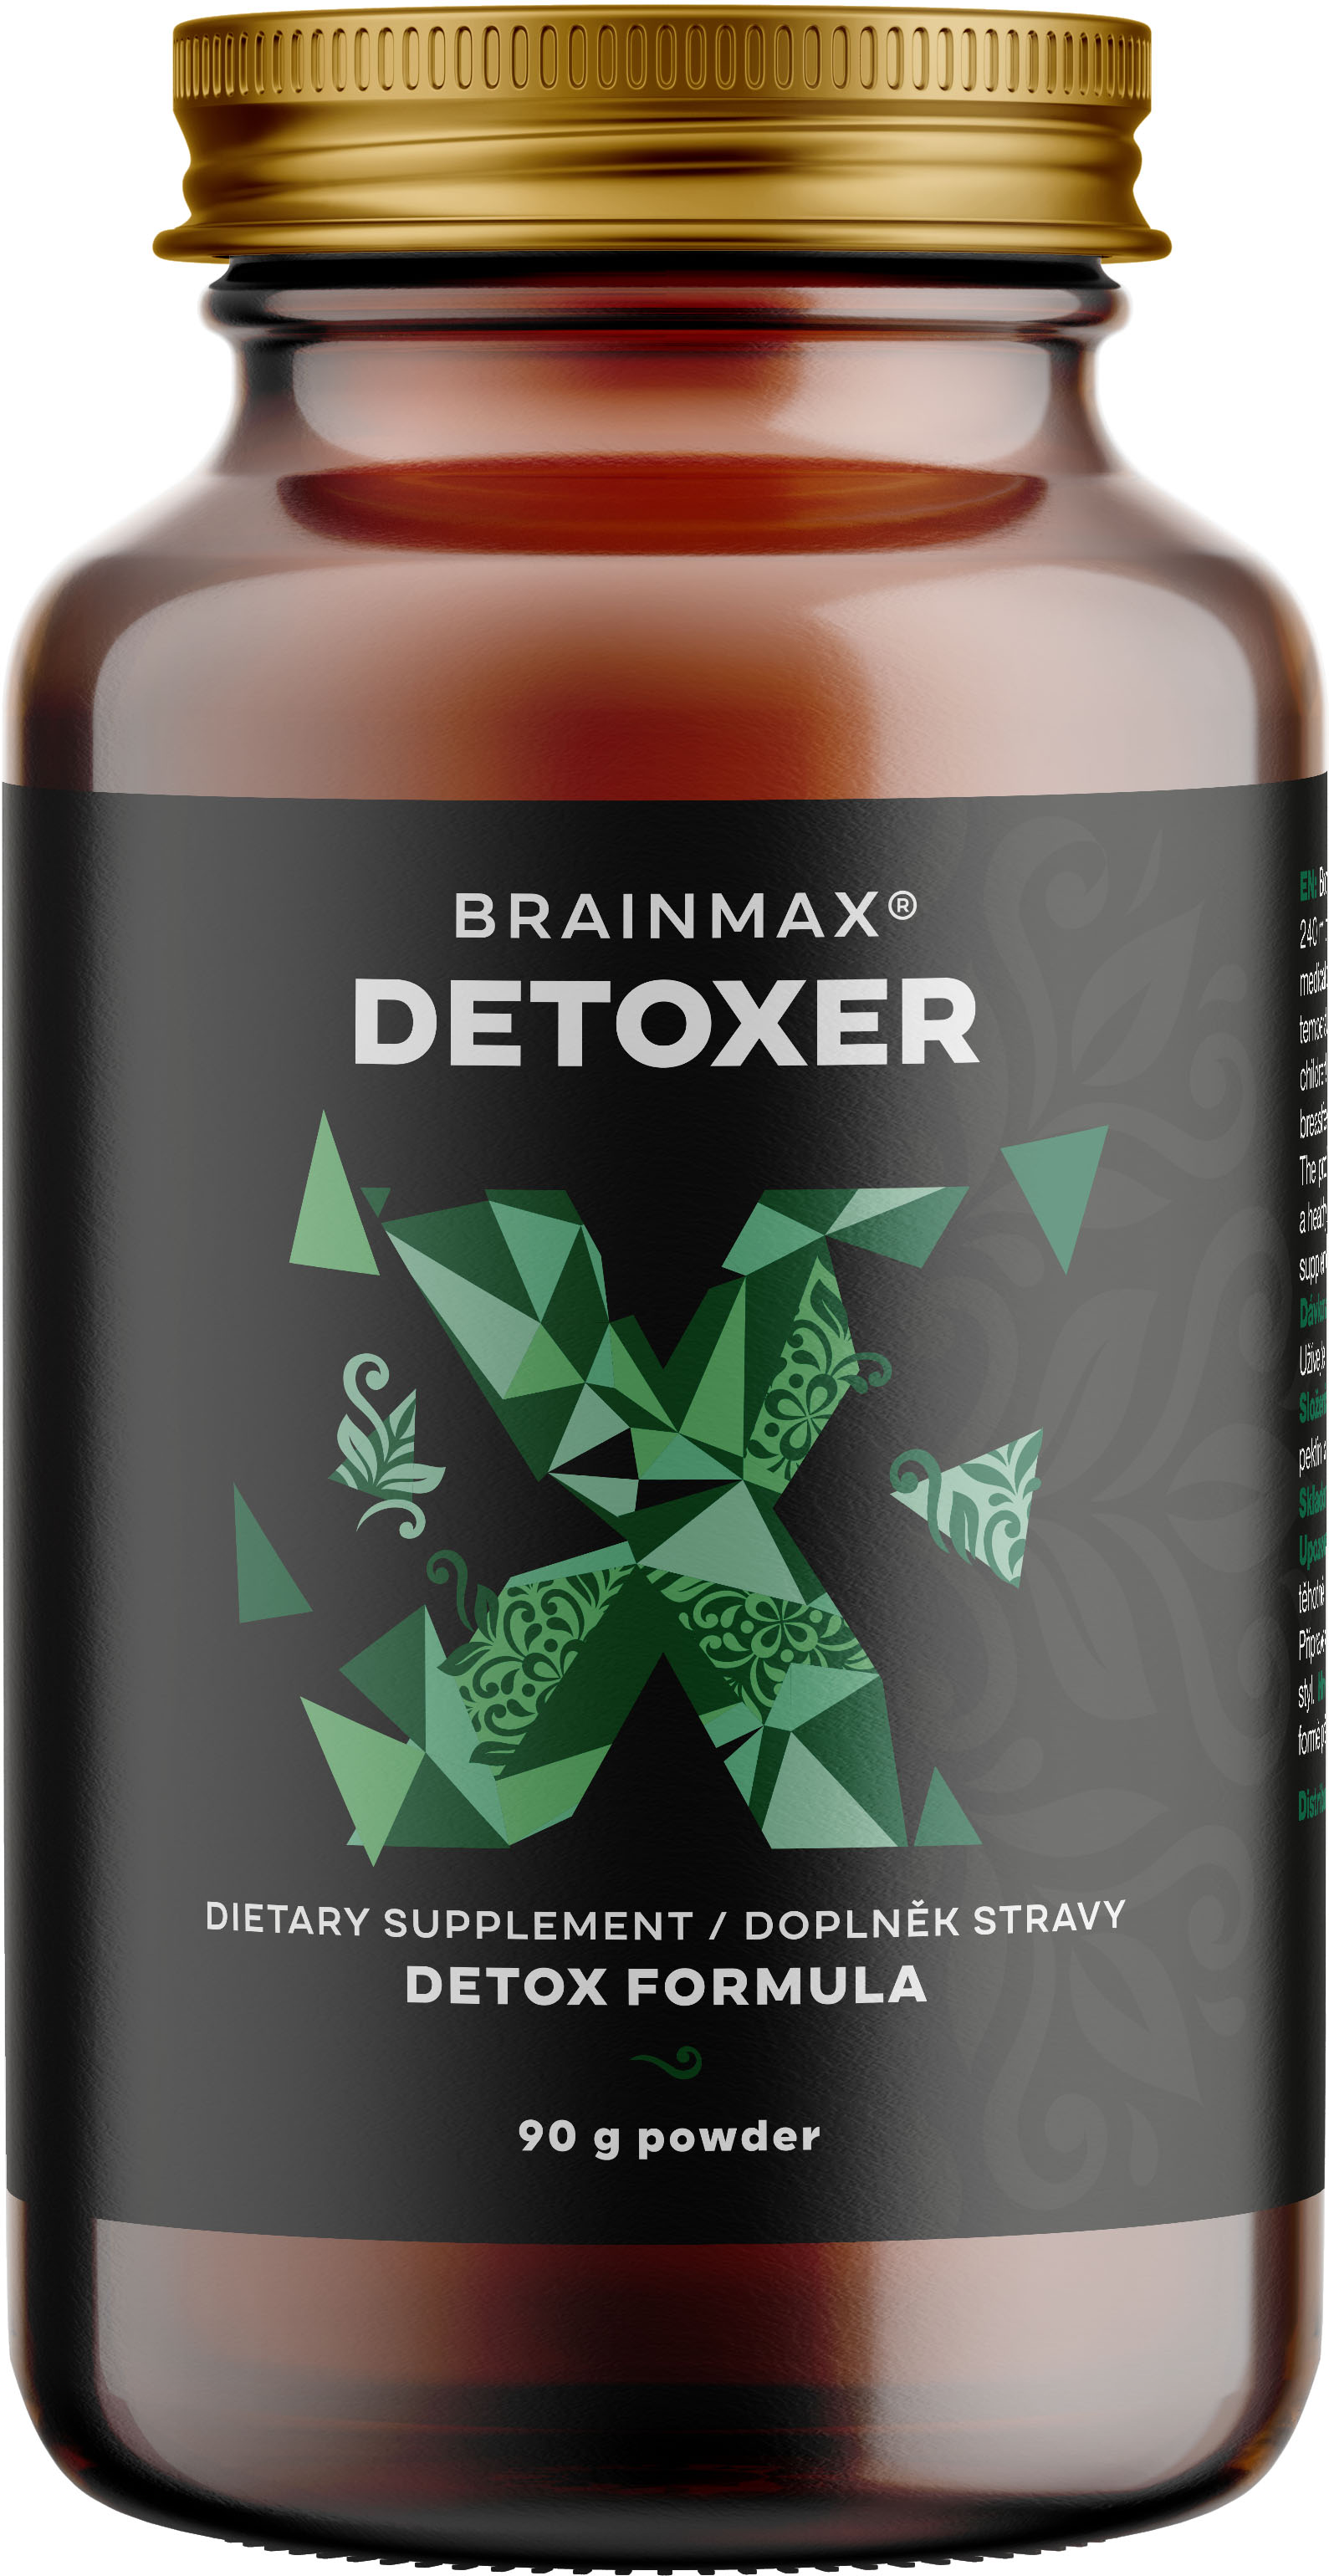 BrainMax Detoxer, prášek pro detoxikaci organismu, 90 g Podpora pro pročištění střev, směs přírodních látek, doplněk stravy, 20 dávek